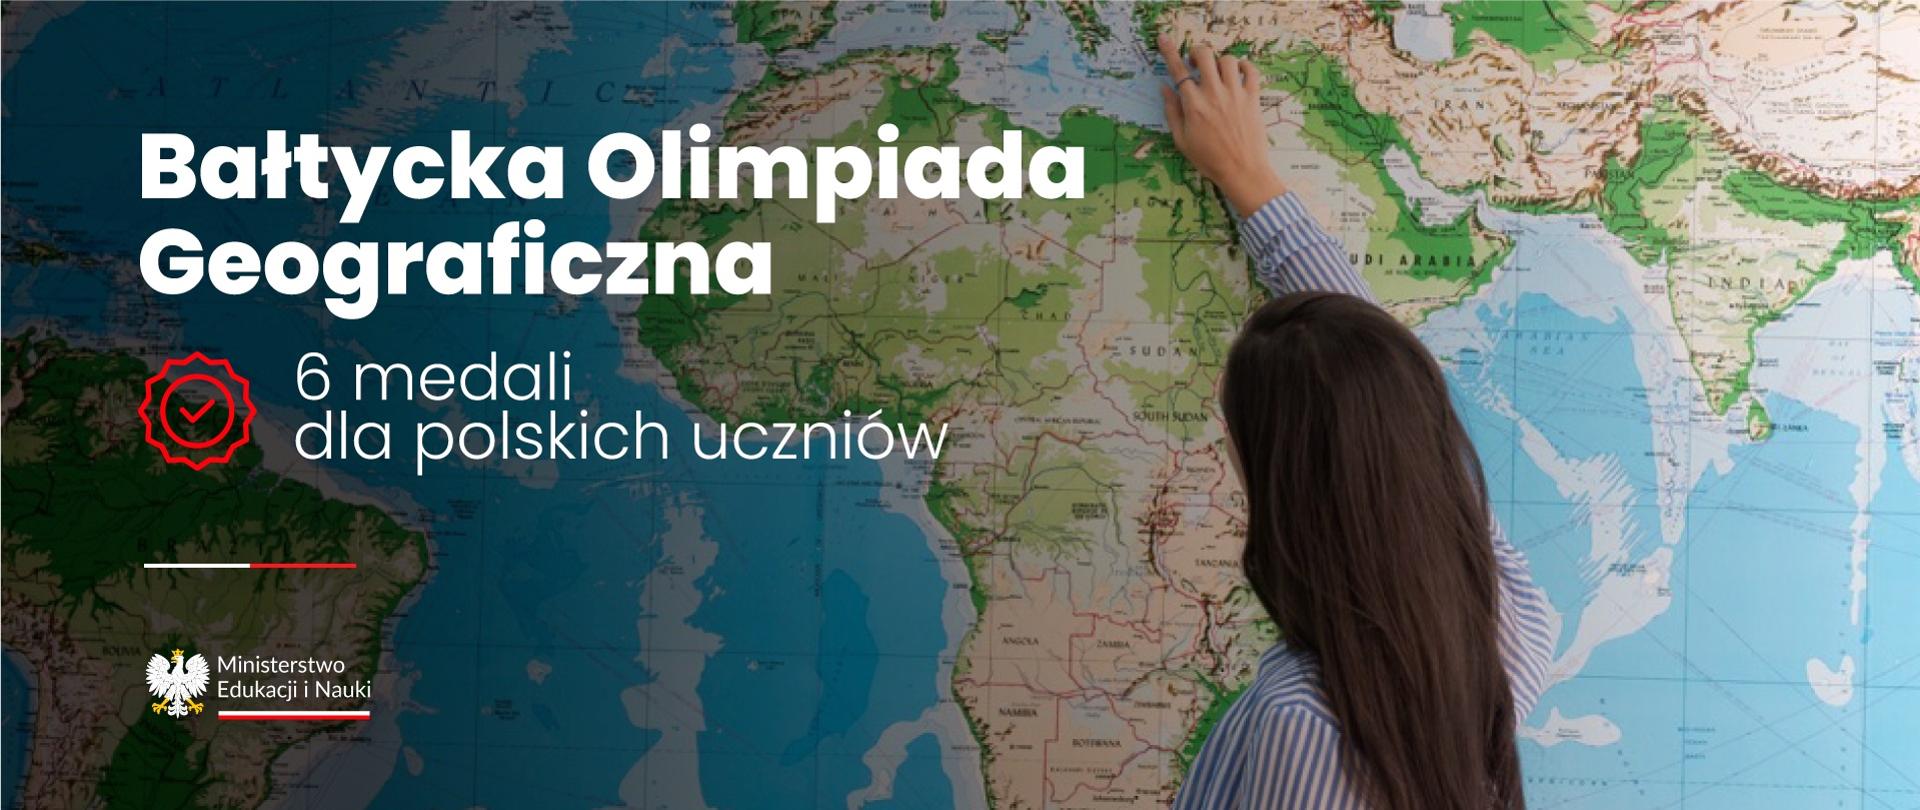 Przy dużej mapie świata stoi ciemnowłosa uczennica, obok napis Bałtycka Olimpiada Geograficzna - 6 medali dla polskich uczniów.